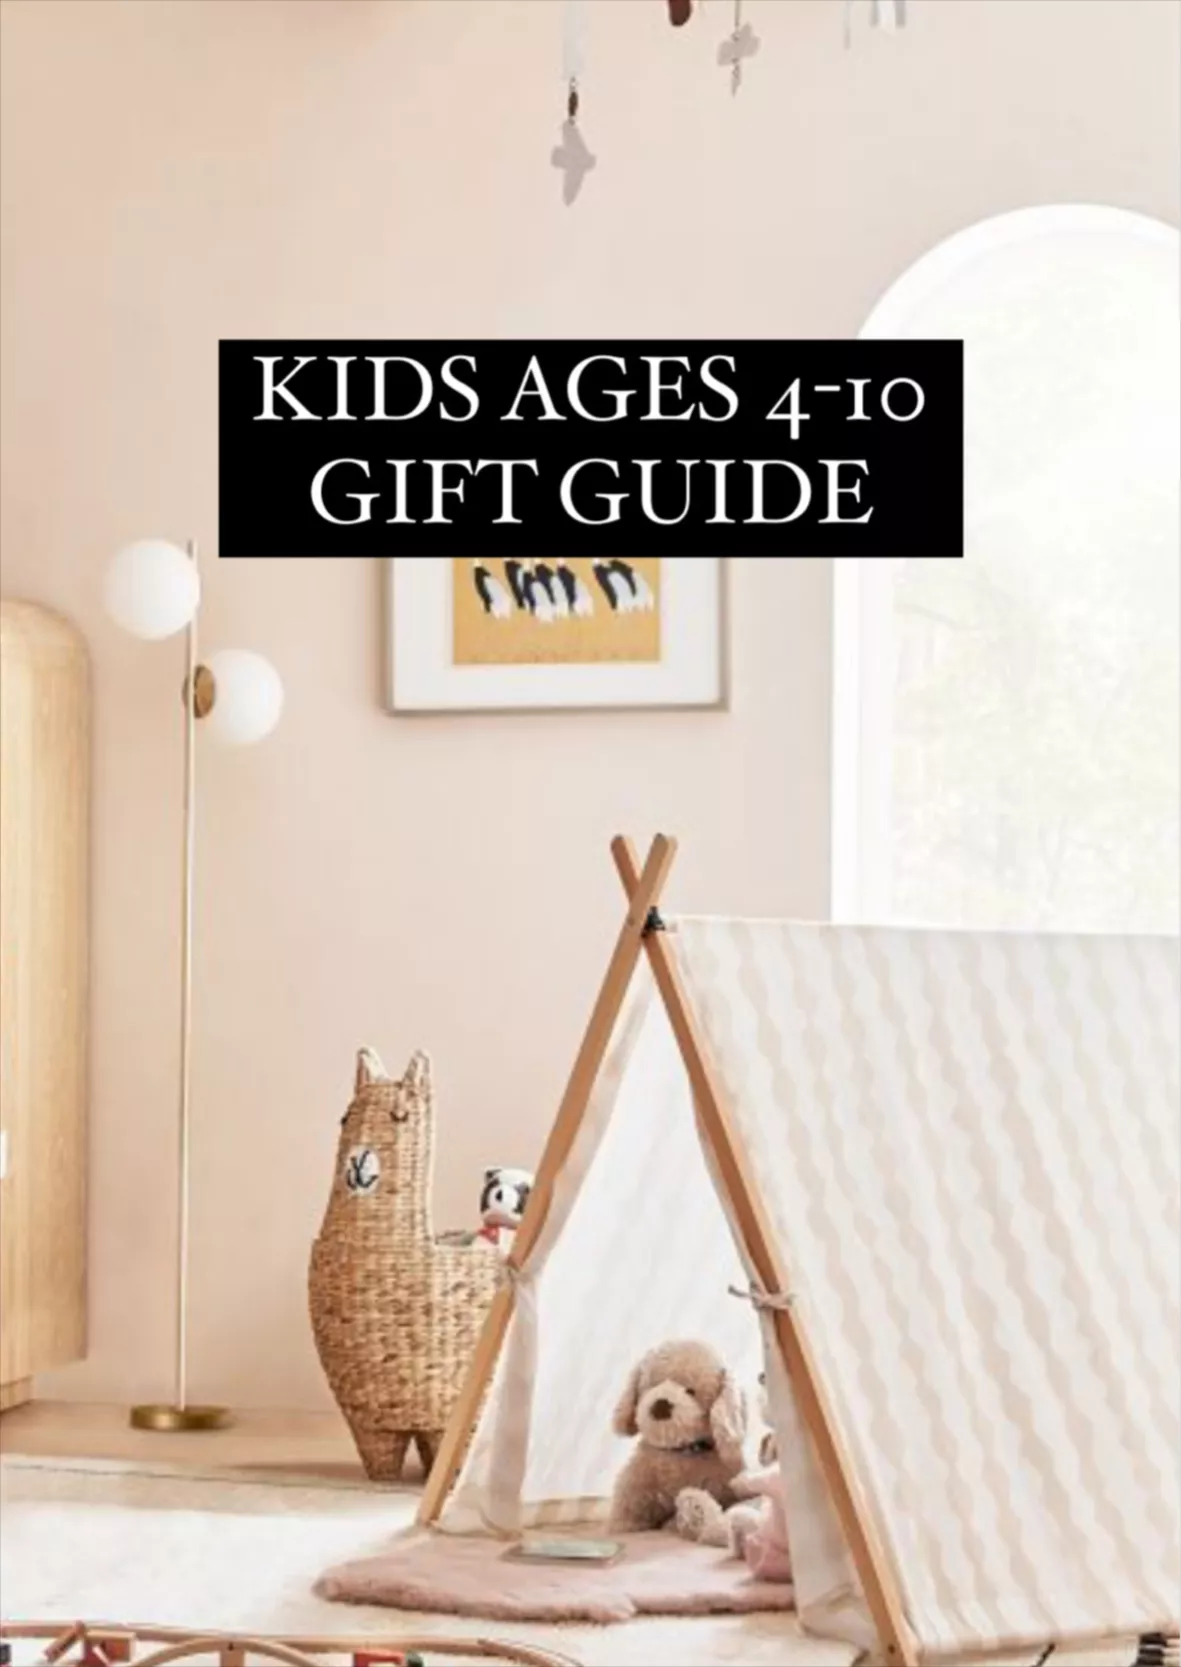 DisneyMoms's Gift Guide Gift Guide on LTK